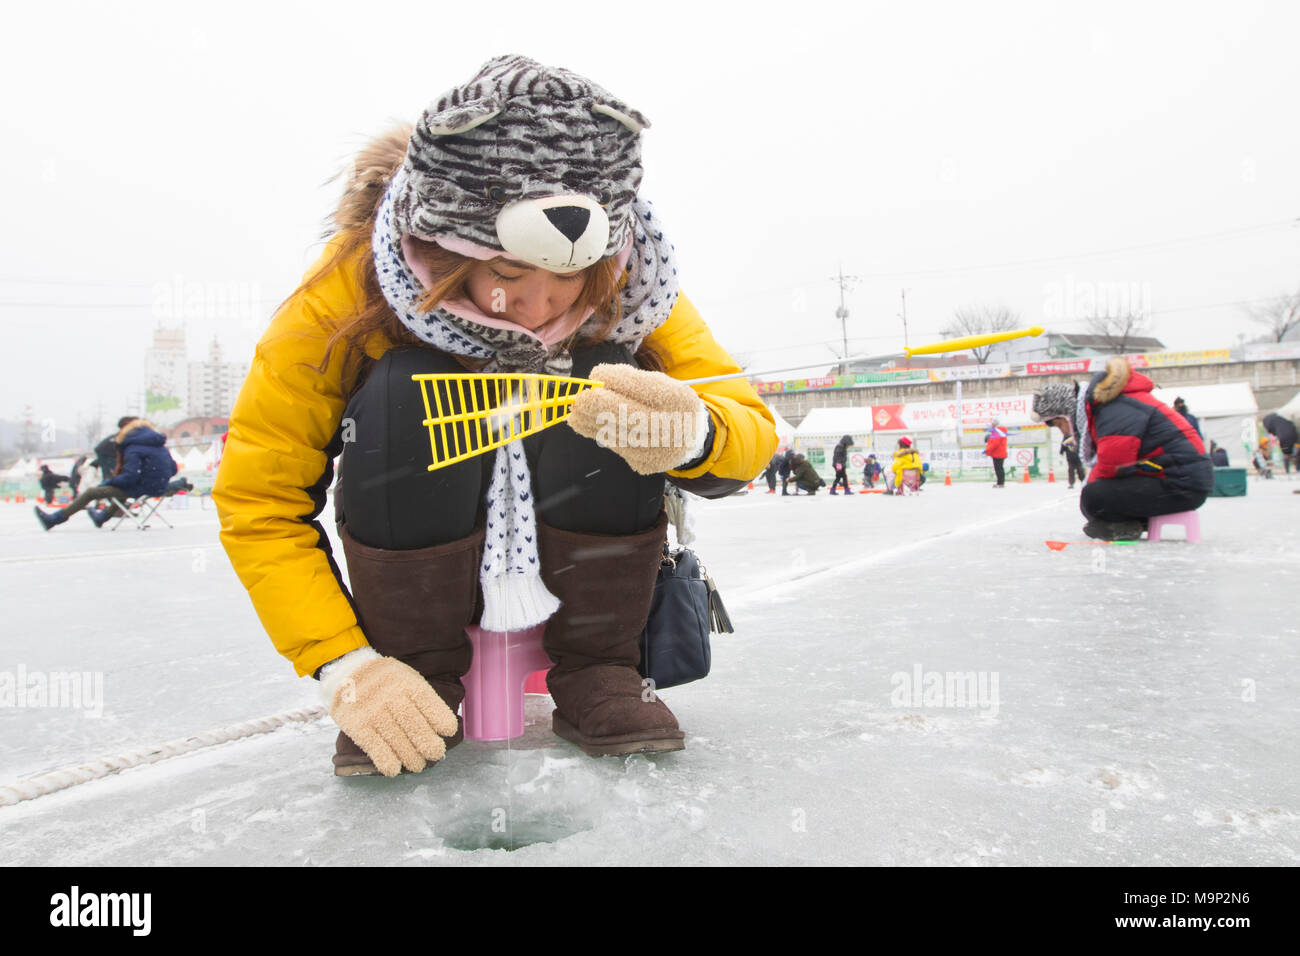 Une femme habillé chaudement essaie d'attraper un poisson dans une rivière gelée. L'Hwacheon Sancheoneo Ice Festival est une tradition pour les coréens. Chaque année en janvier les foules se rassemblent à la rivière gelée pour célébrer le froid et la neige de l'hiver. L'attraction principale est la pêche sur glace. Jeunes et vieux attendent patiemment sur un petit trou dans la glace pour une truite de mordre. Dans des tentes qu'ils peuvent laisser les poissons grillés après qu'ils soient mangés. Parmi les autres activités sont la luge et le patinage sur glace. La proximité de la région de Pyeongchang accueillera les Jeux Olympiques d'hiver en février 2018. Banque D'Images